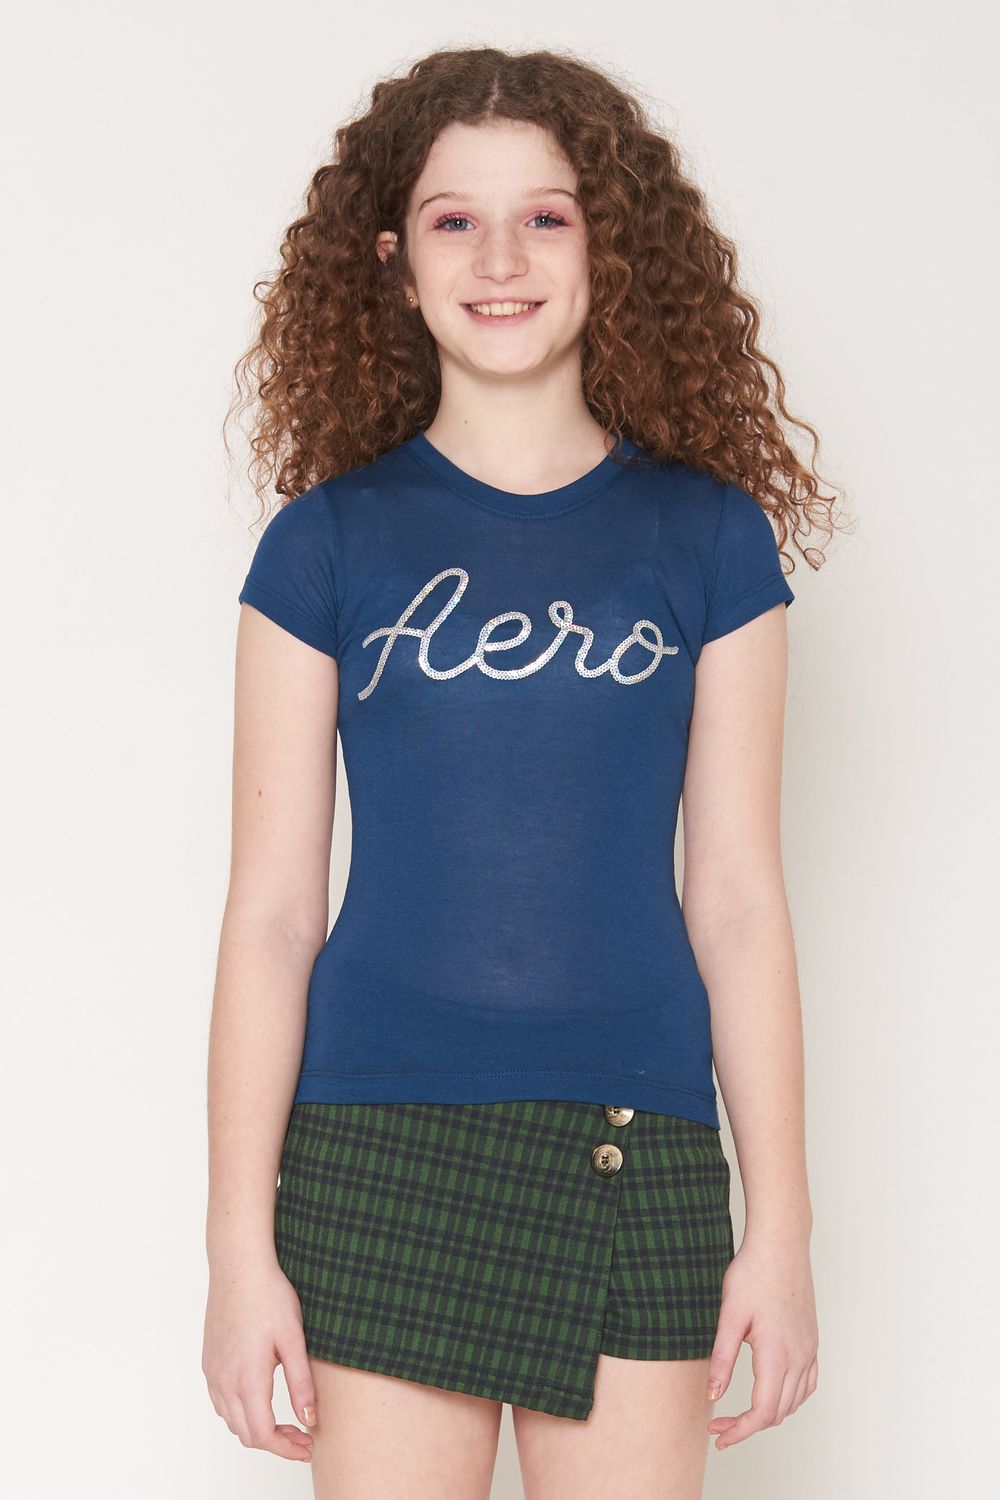 Camiseta Teen Infantil Feminina Manga Curta Aero - Aeropostale -  aeropostalebrasil